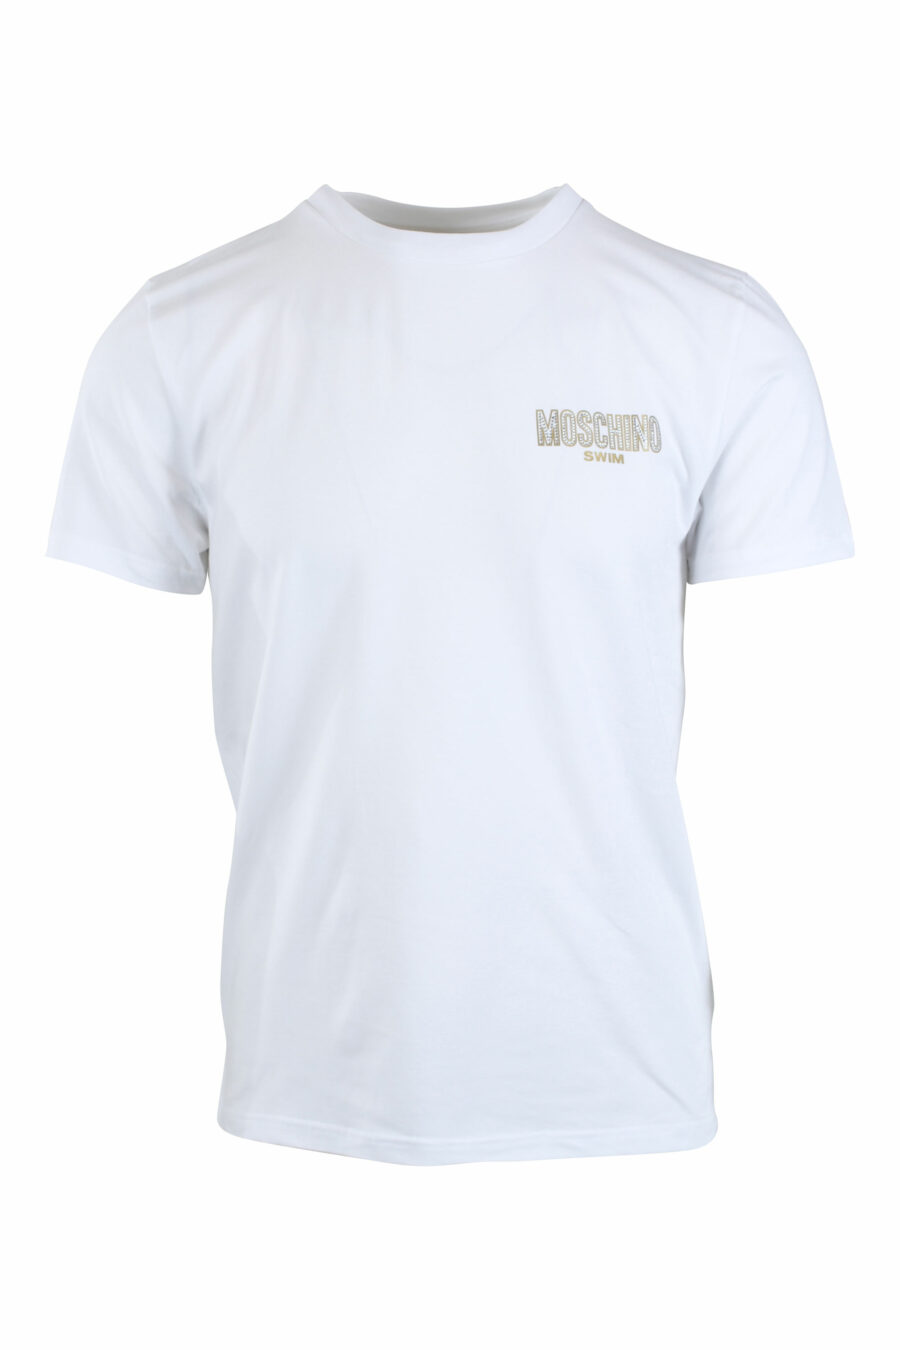 Camiseta blanca con logo pequeño en dorado y strass - IMG 2657